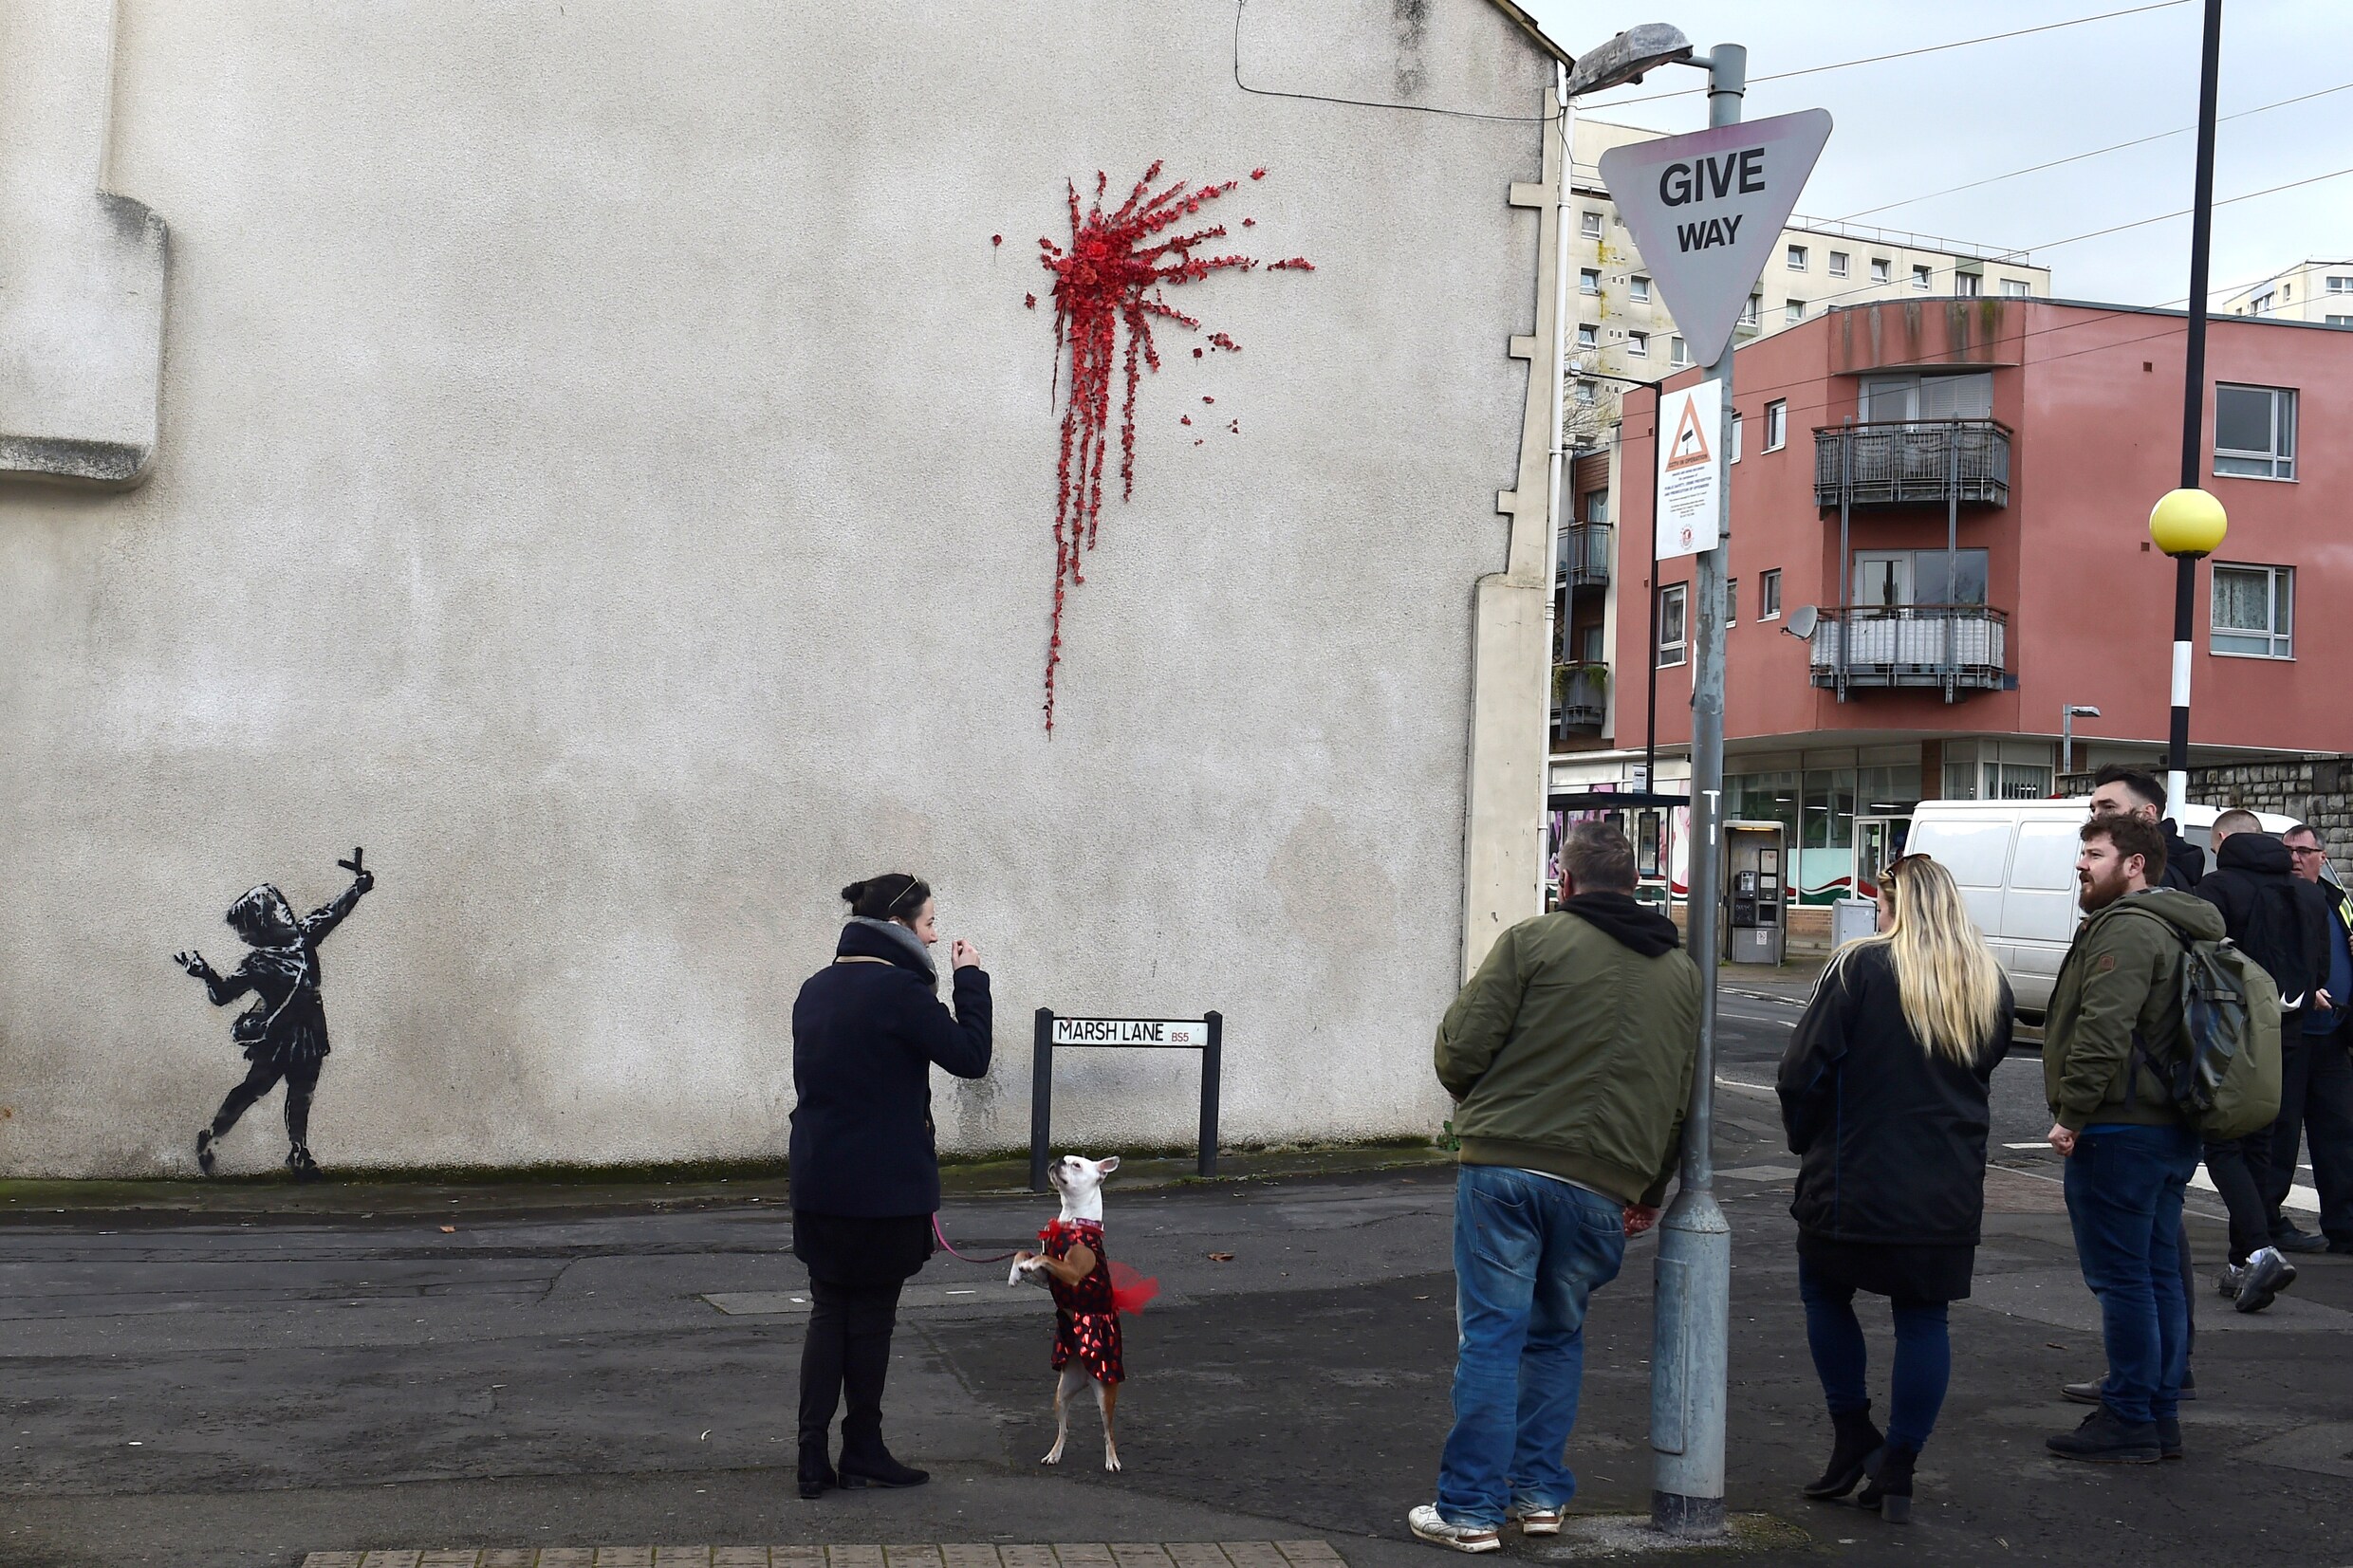 ‘Valentijnswerk’ van Banksy duikt op in Bristol